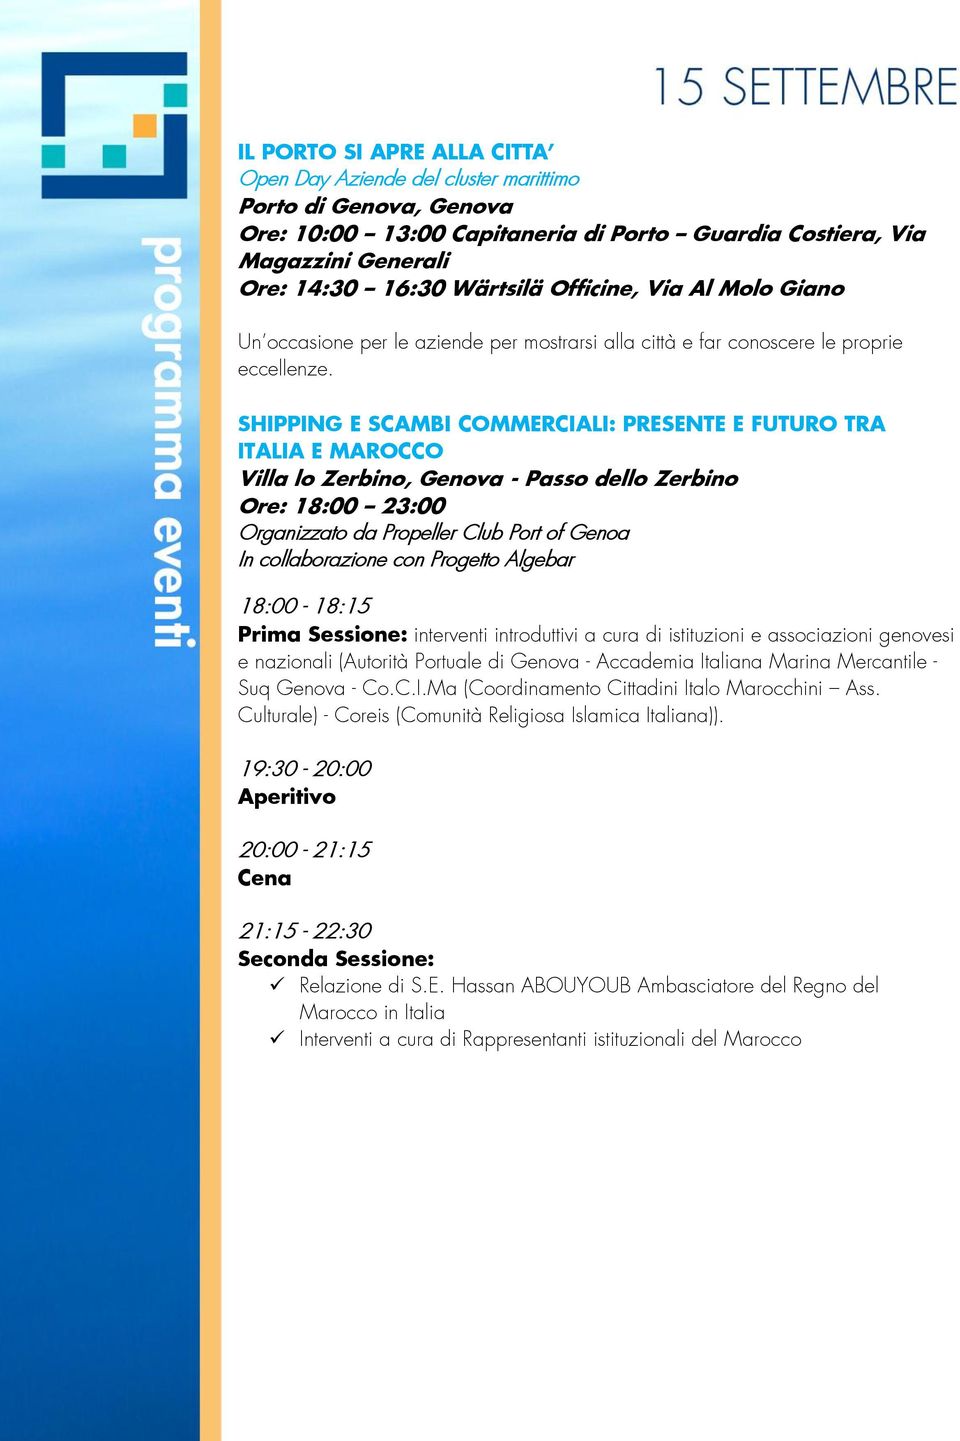 SHIPPING E SCAMBI COMMERCIALI: PRESENTE E FUTURO TRA ITALIA E MAROCCO Villa lo Zerbino, Genova - Passo dello Zerbino Ore: 18:00 23:00 Organizzato da Propeller Club Port of Genoa In collaborazione con